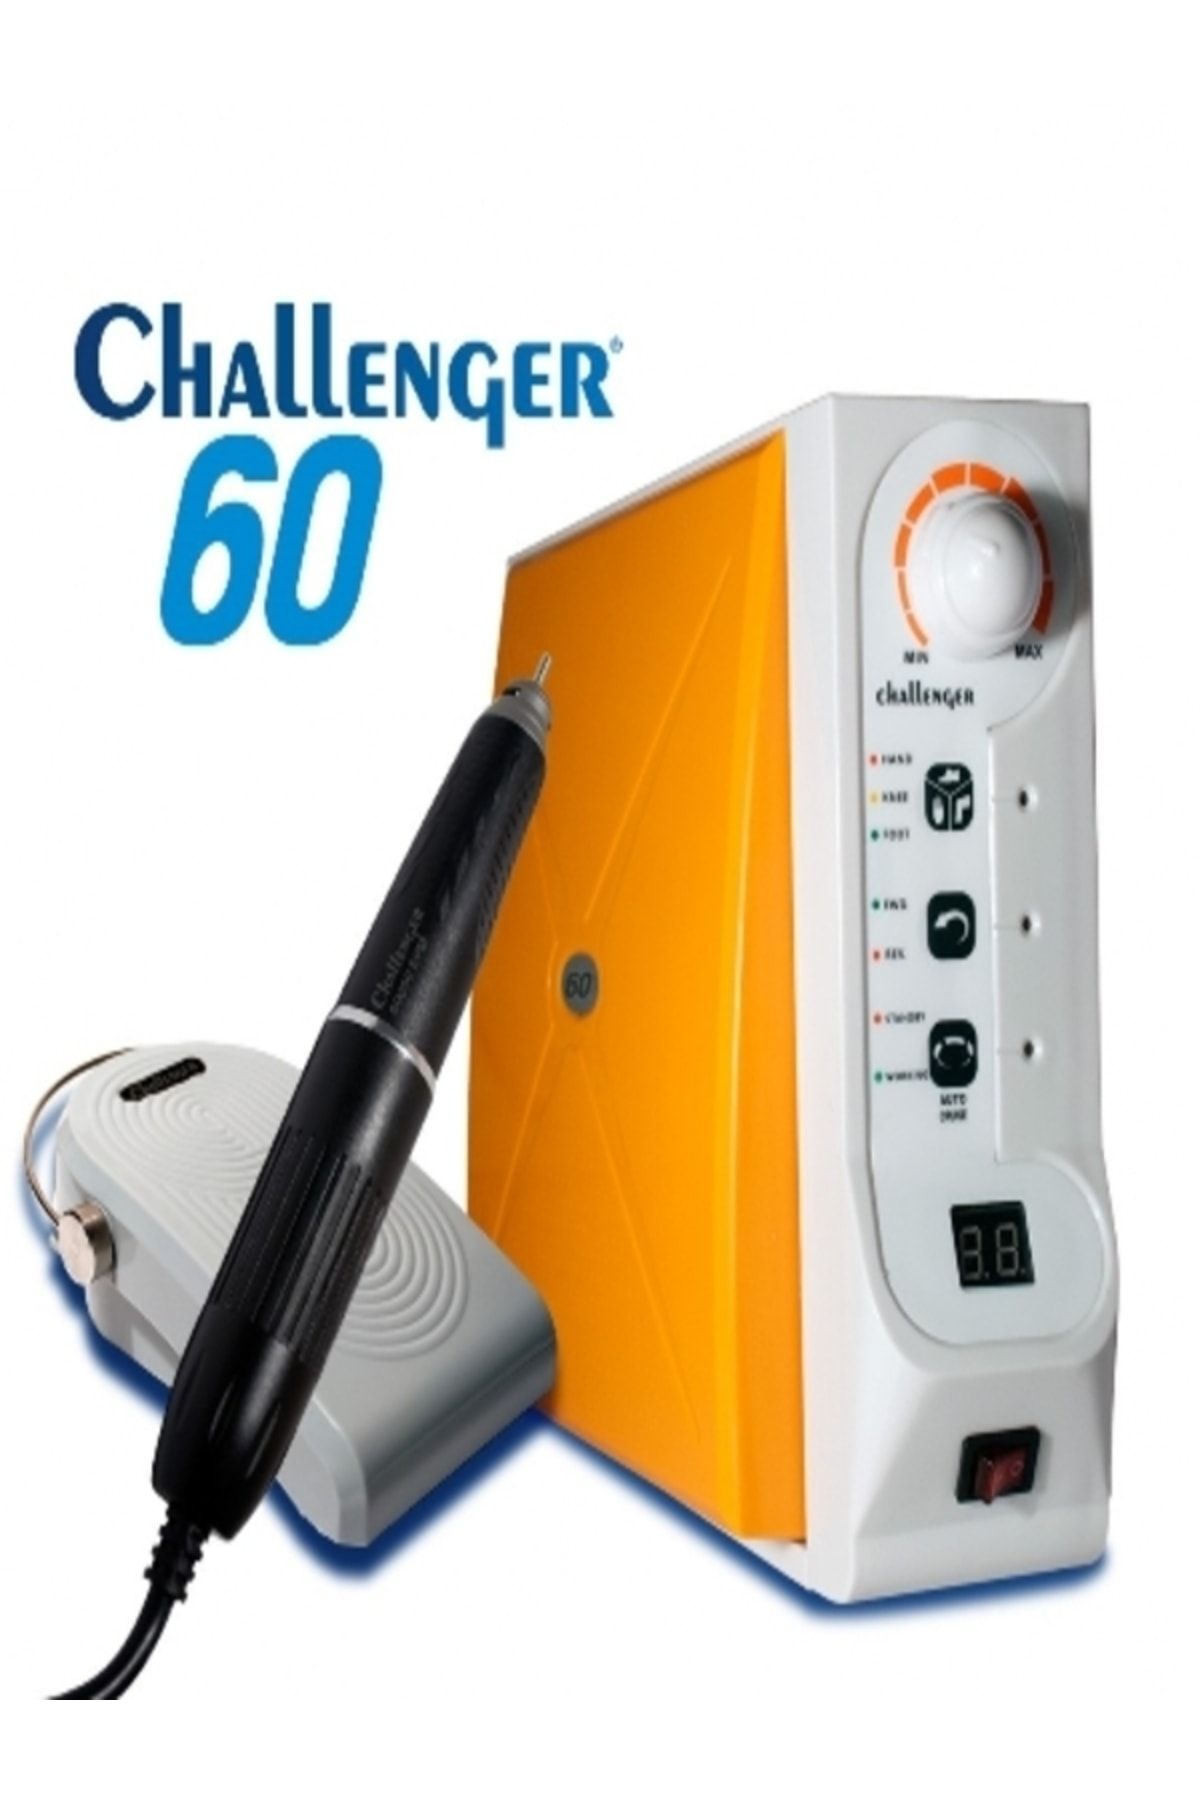 Challenger Mikromotor (60.000 DEVİR) Her Türlü Porselen Ve Metal Tesviye Işleri Için Cahallenger60